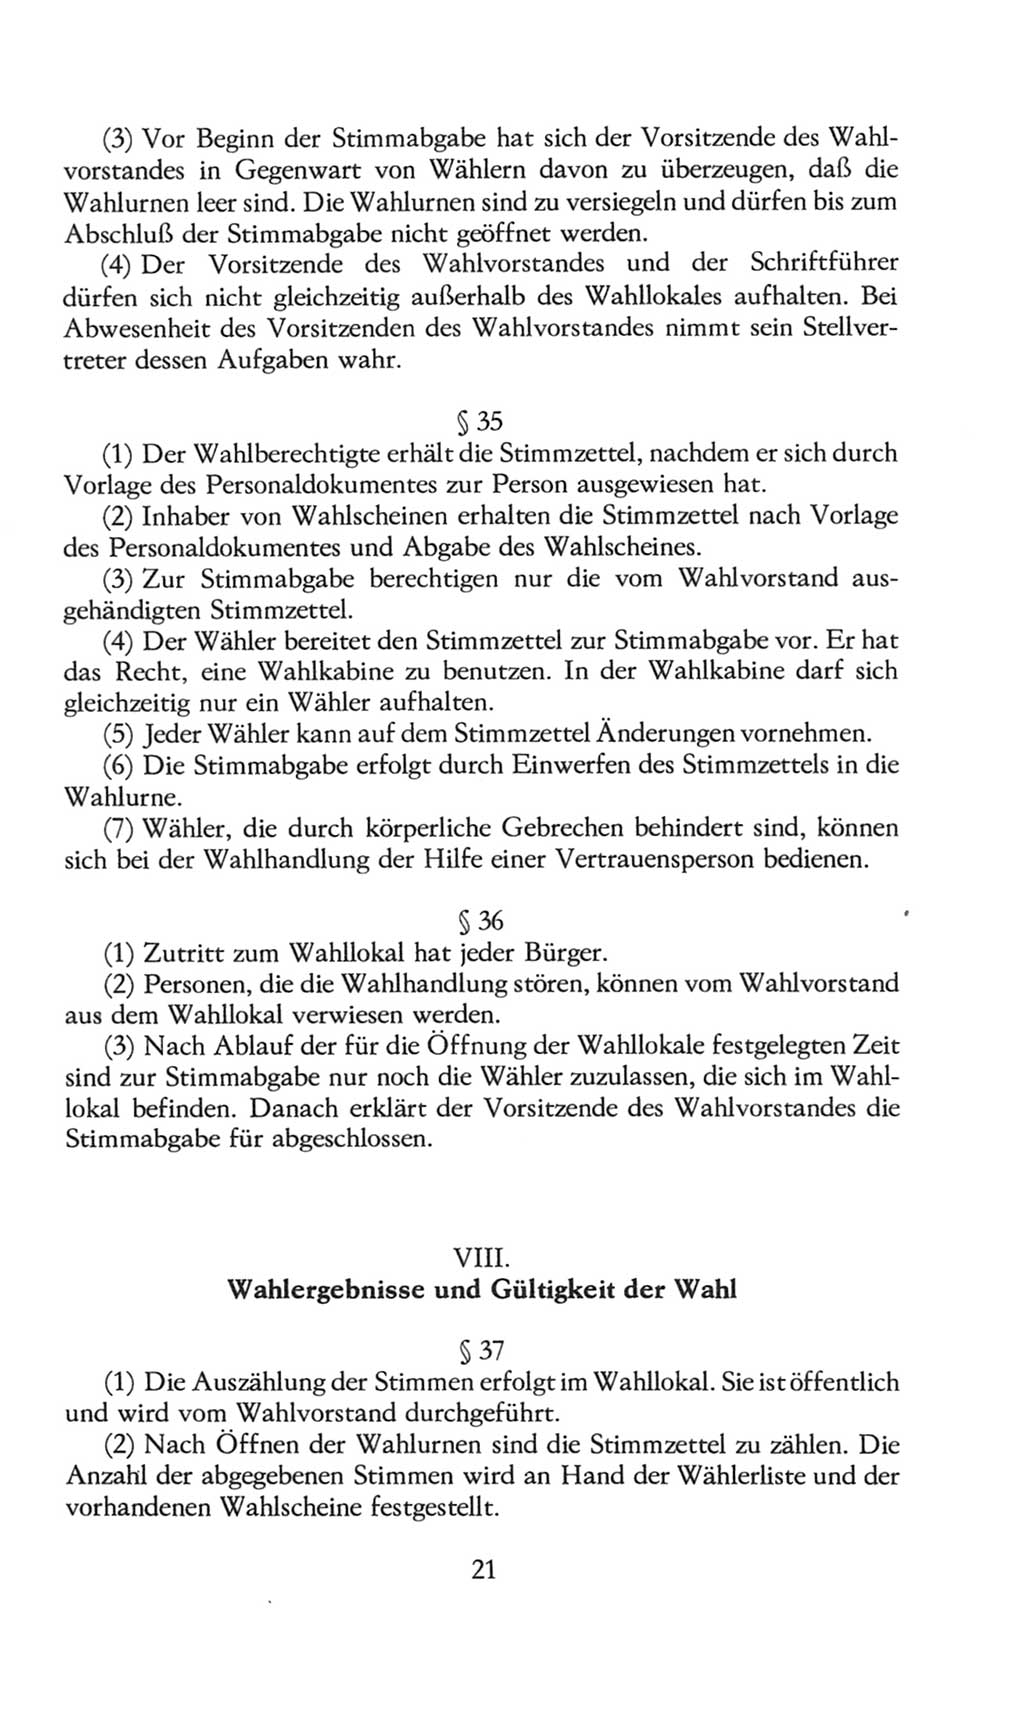 Volkskammer (VK) der Deutschen Demokratischen Republik (DDR), 8. Wahlperiode 1981-1986, Seite 21 (VK. DDR 8. WP. 1981-1986, S. 21)